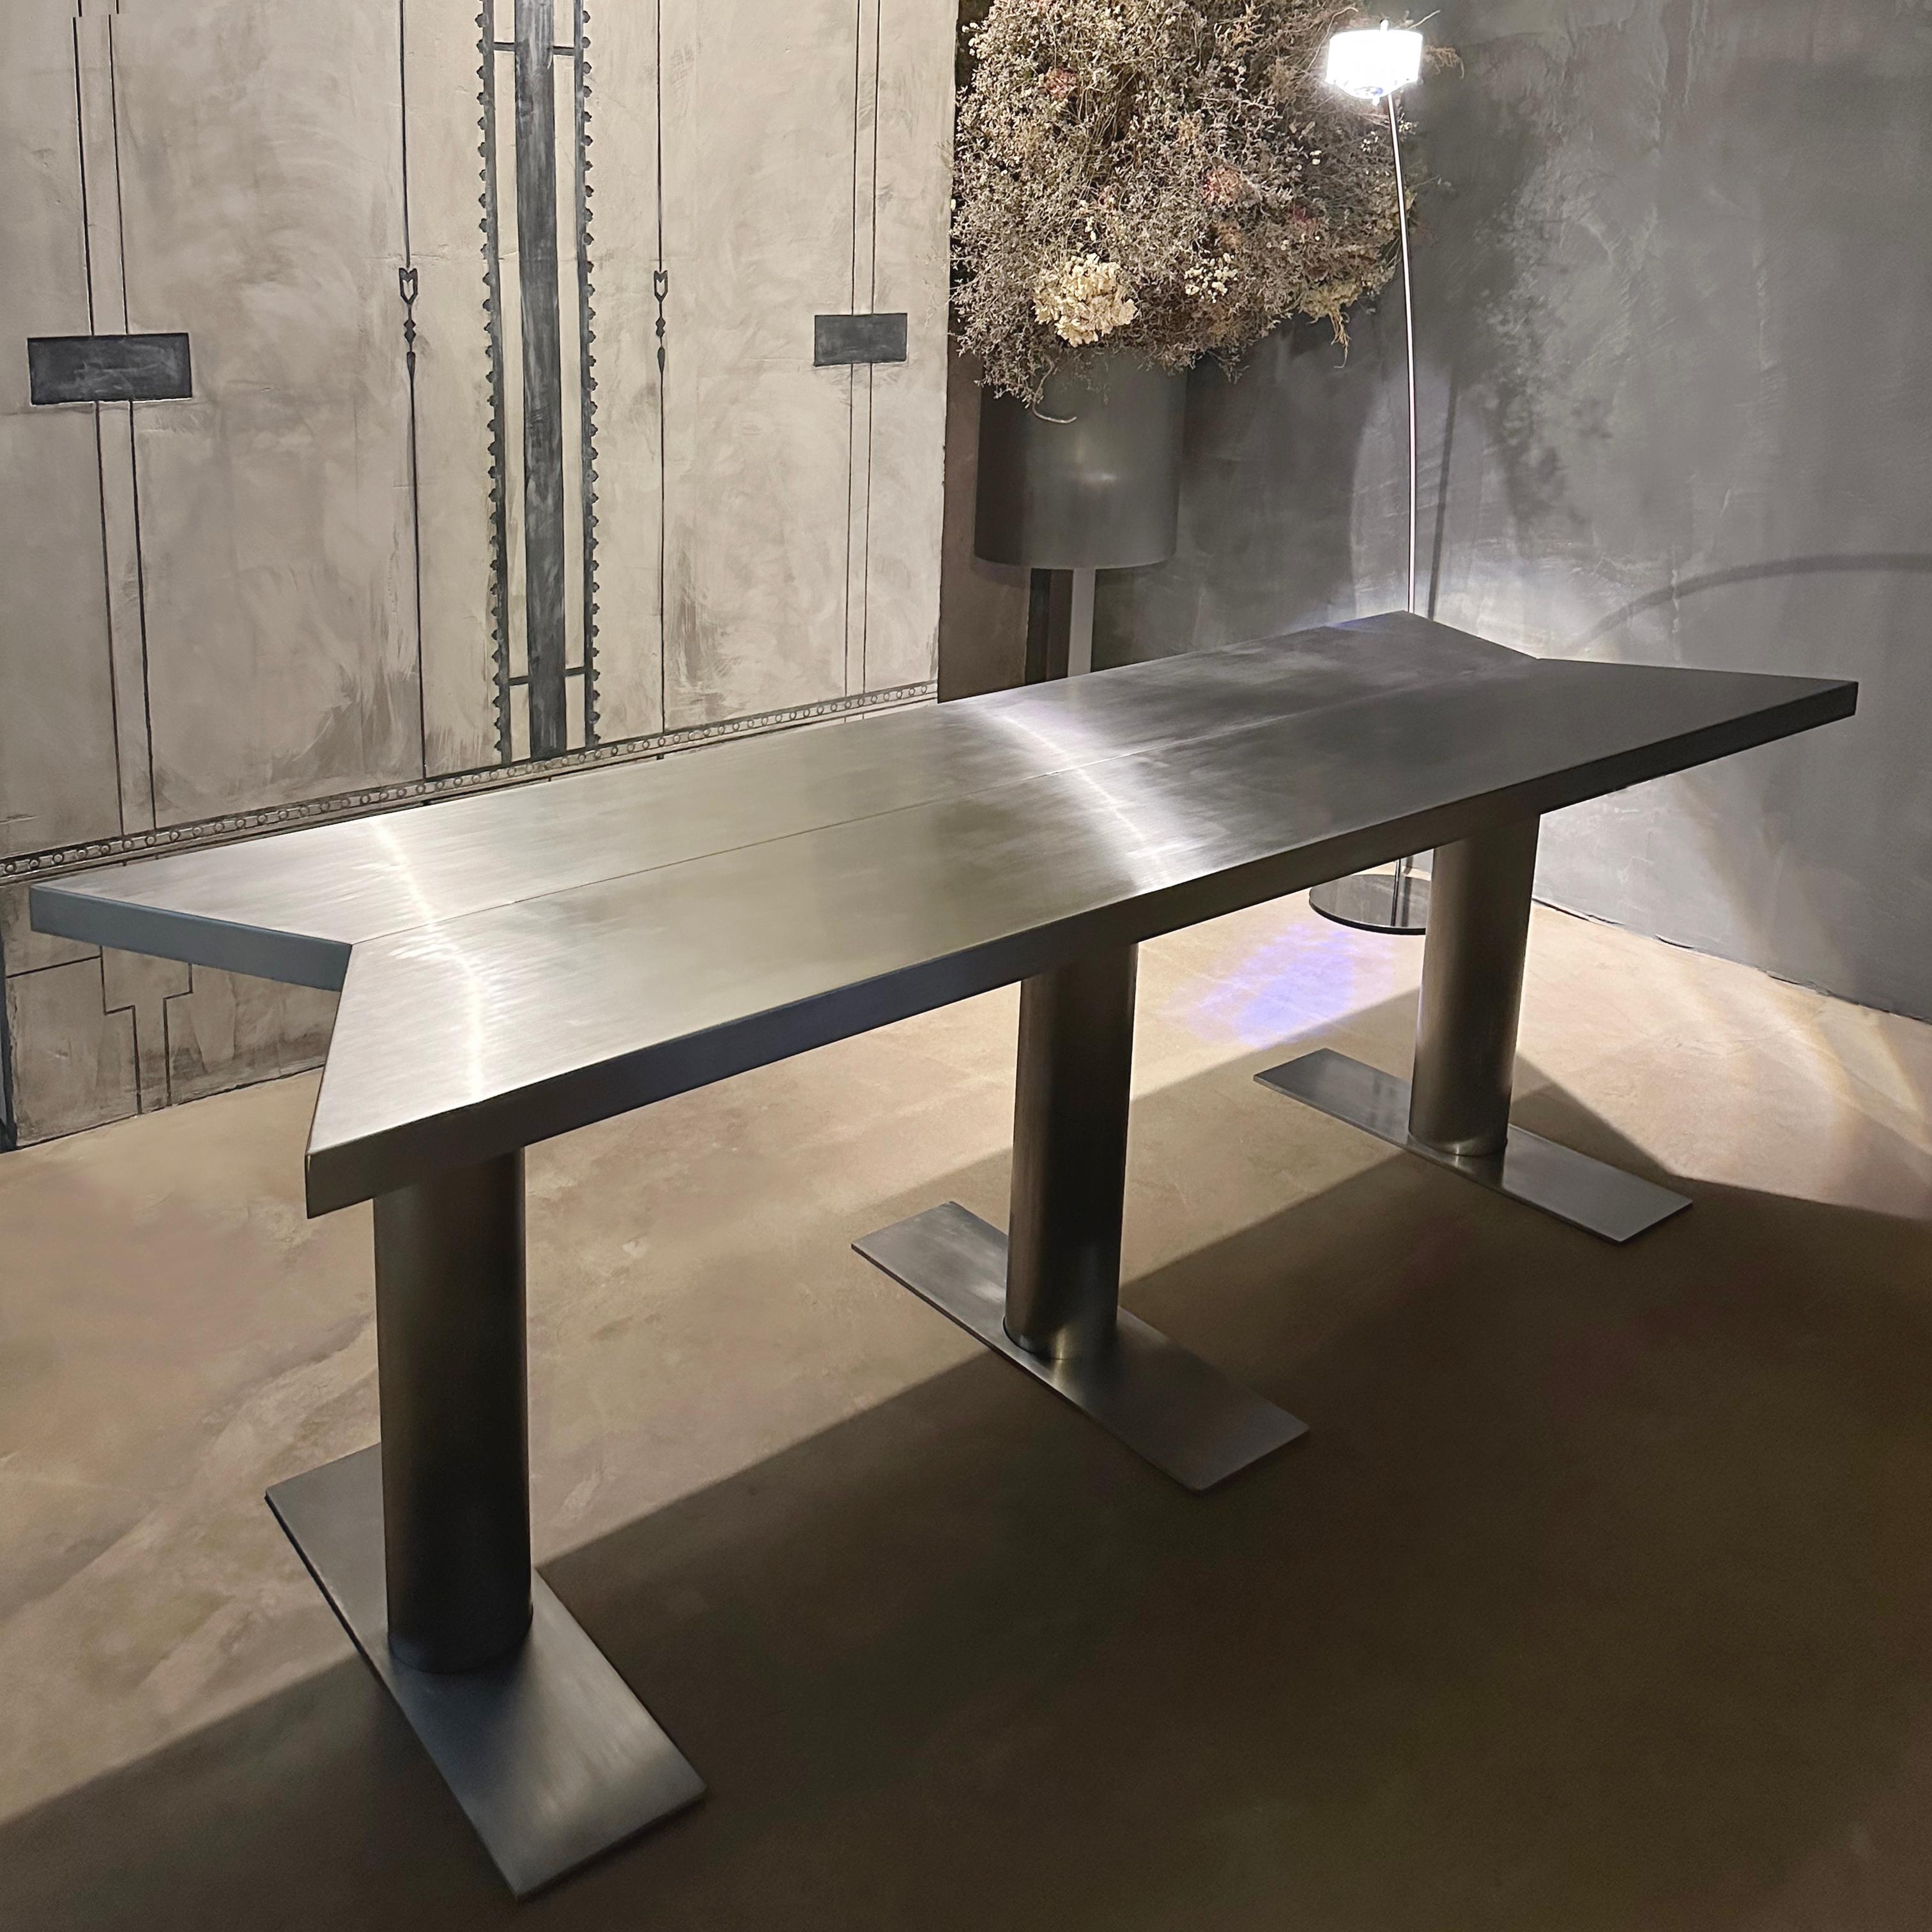 Table de salle à manger à canon en fer, JAMES VINCENT MILANO, Italie, 2023

Dessus hexagonal irrégulier. 
Pieds tripodes. 
Ensemble complété par des tables d'appoint 